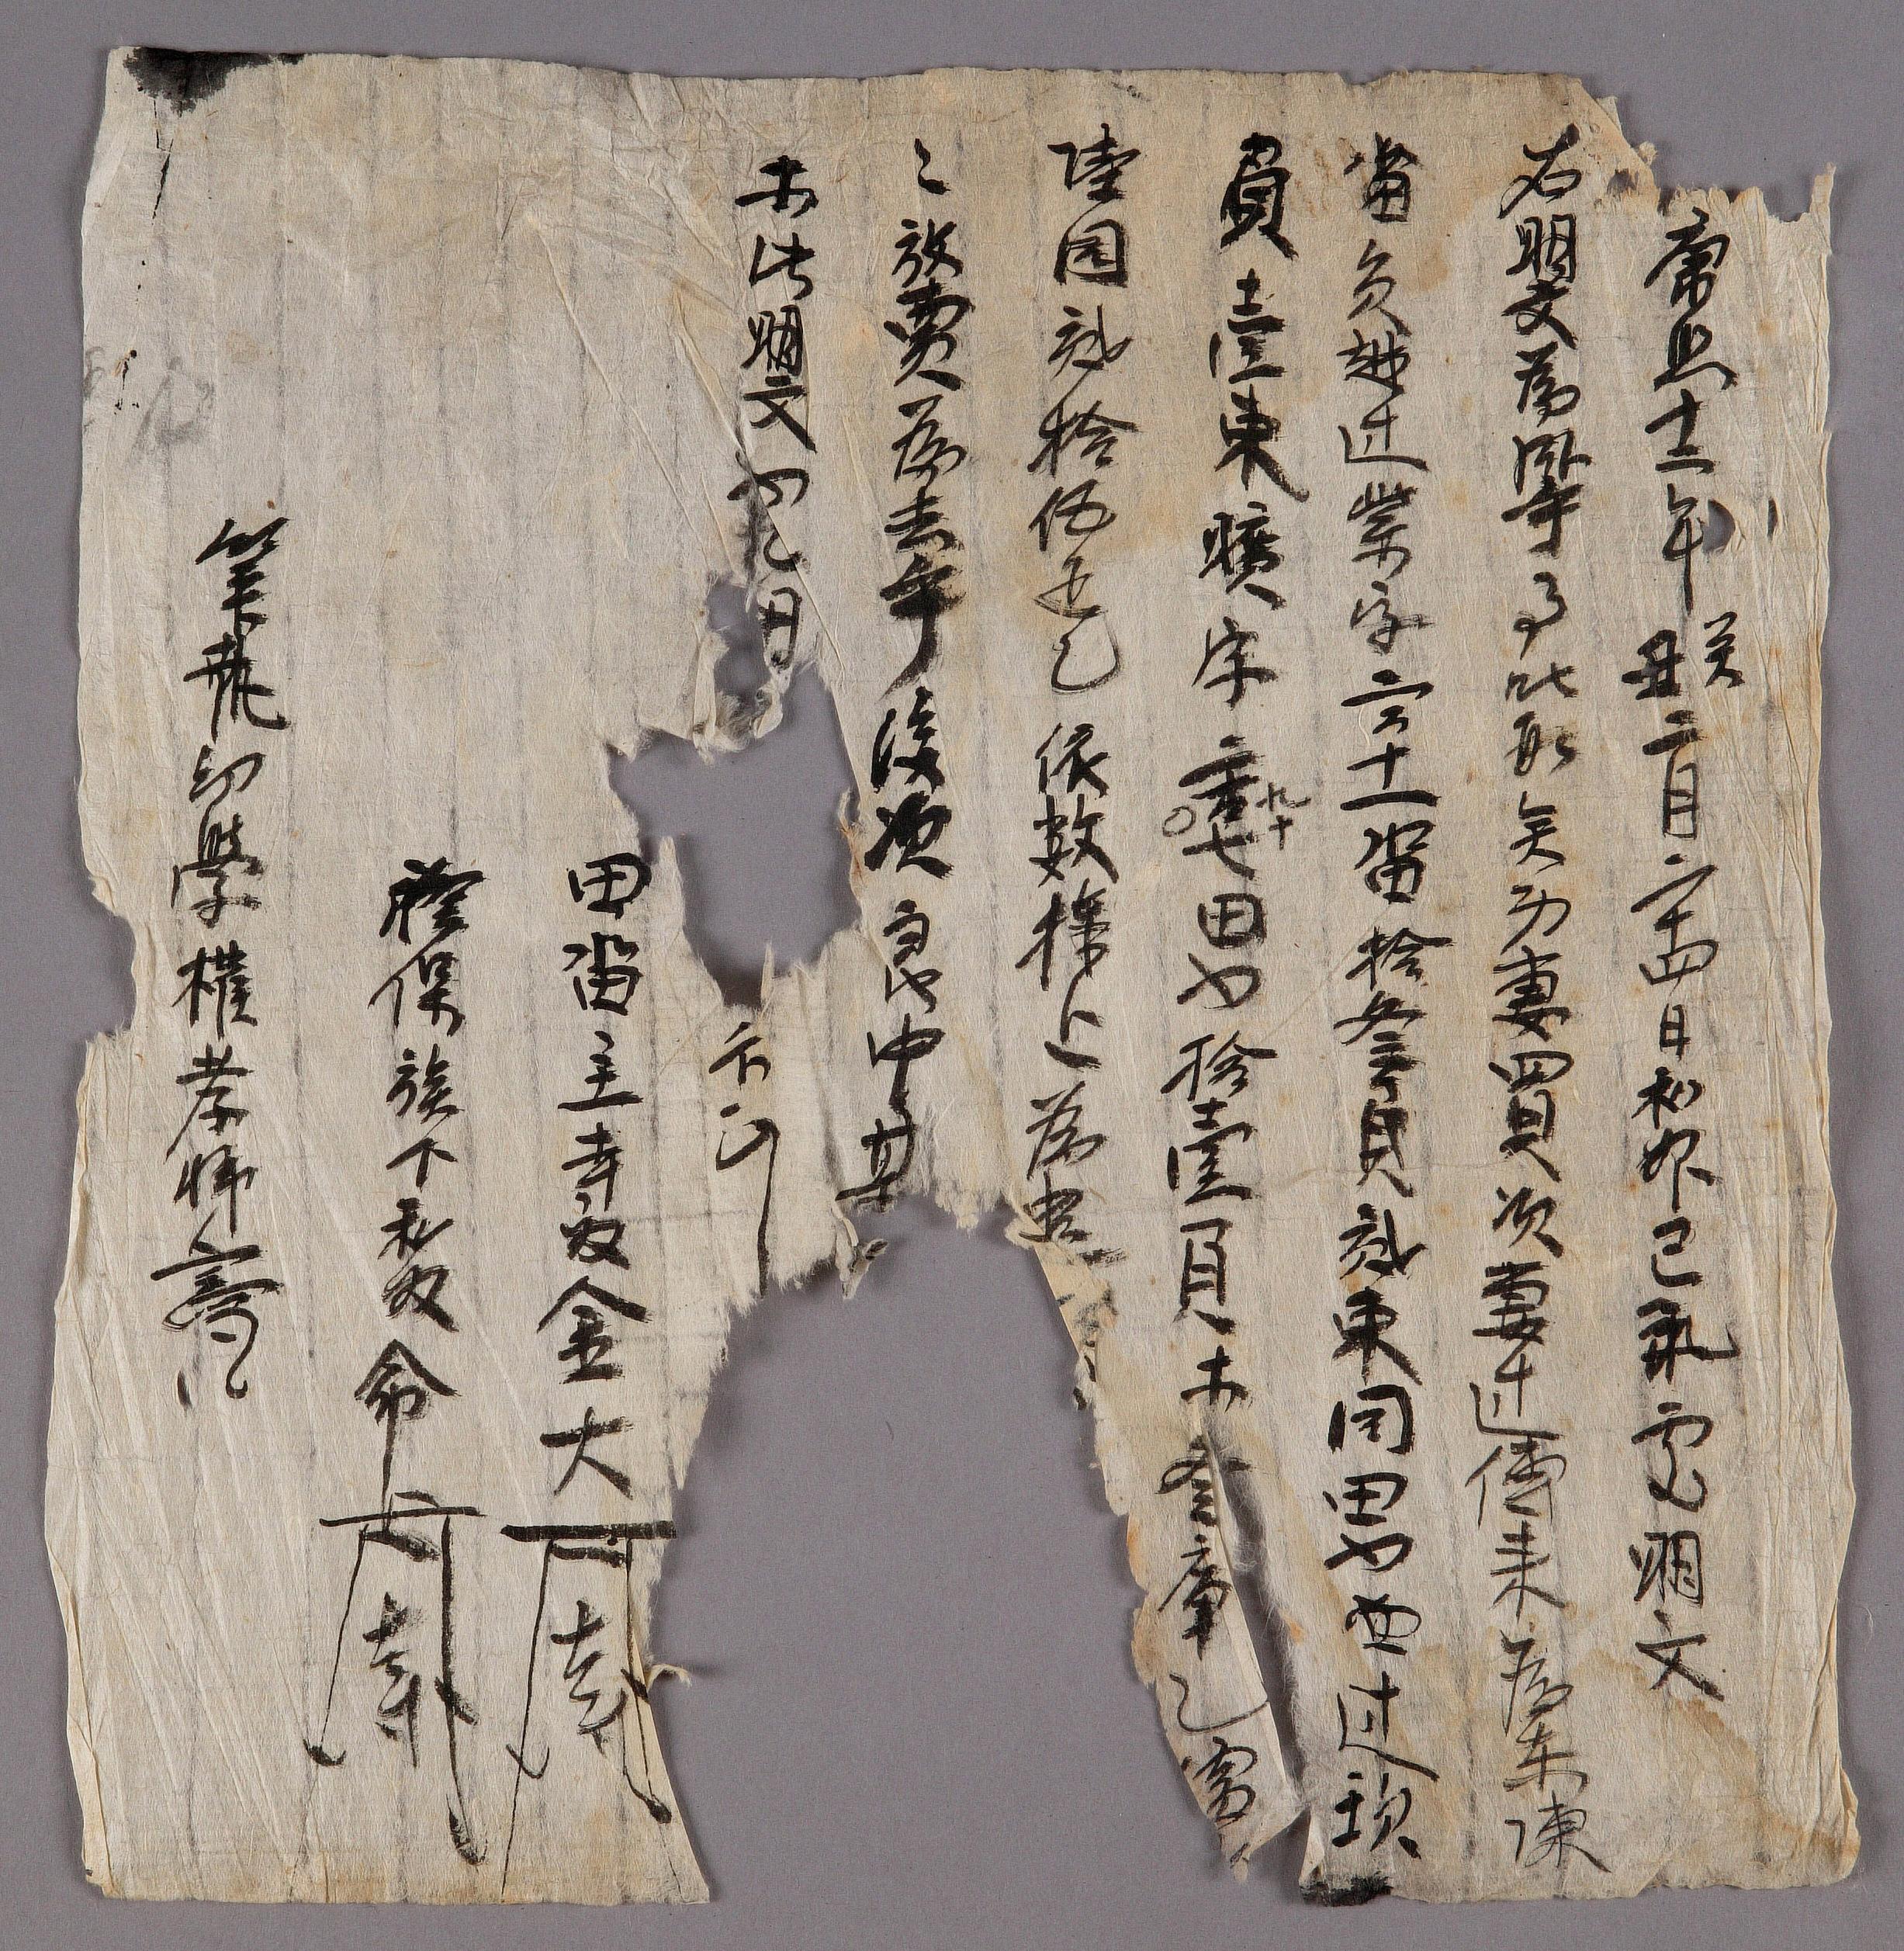 사노(寺奴) 금대(金大)가 1673년에 작성한 전답 방매문기